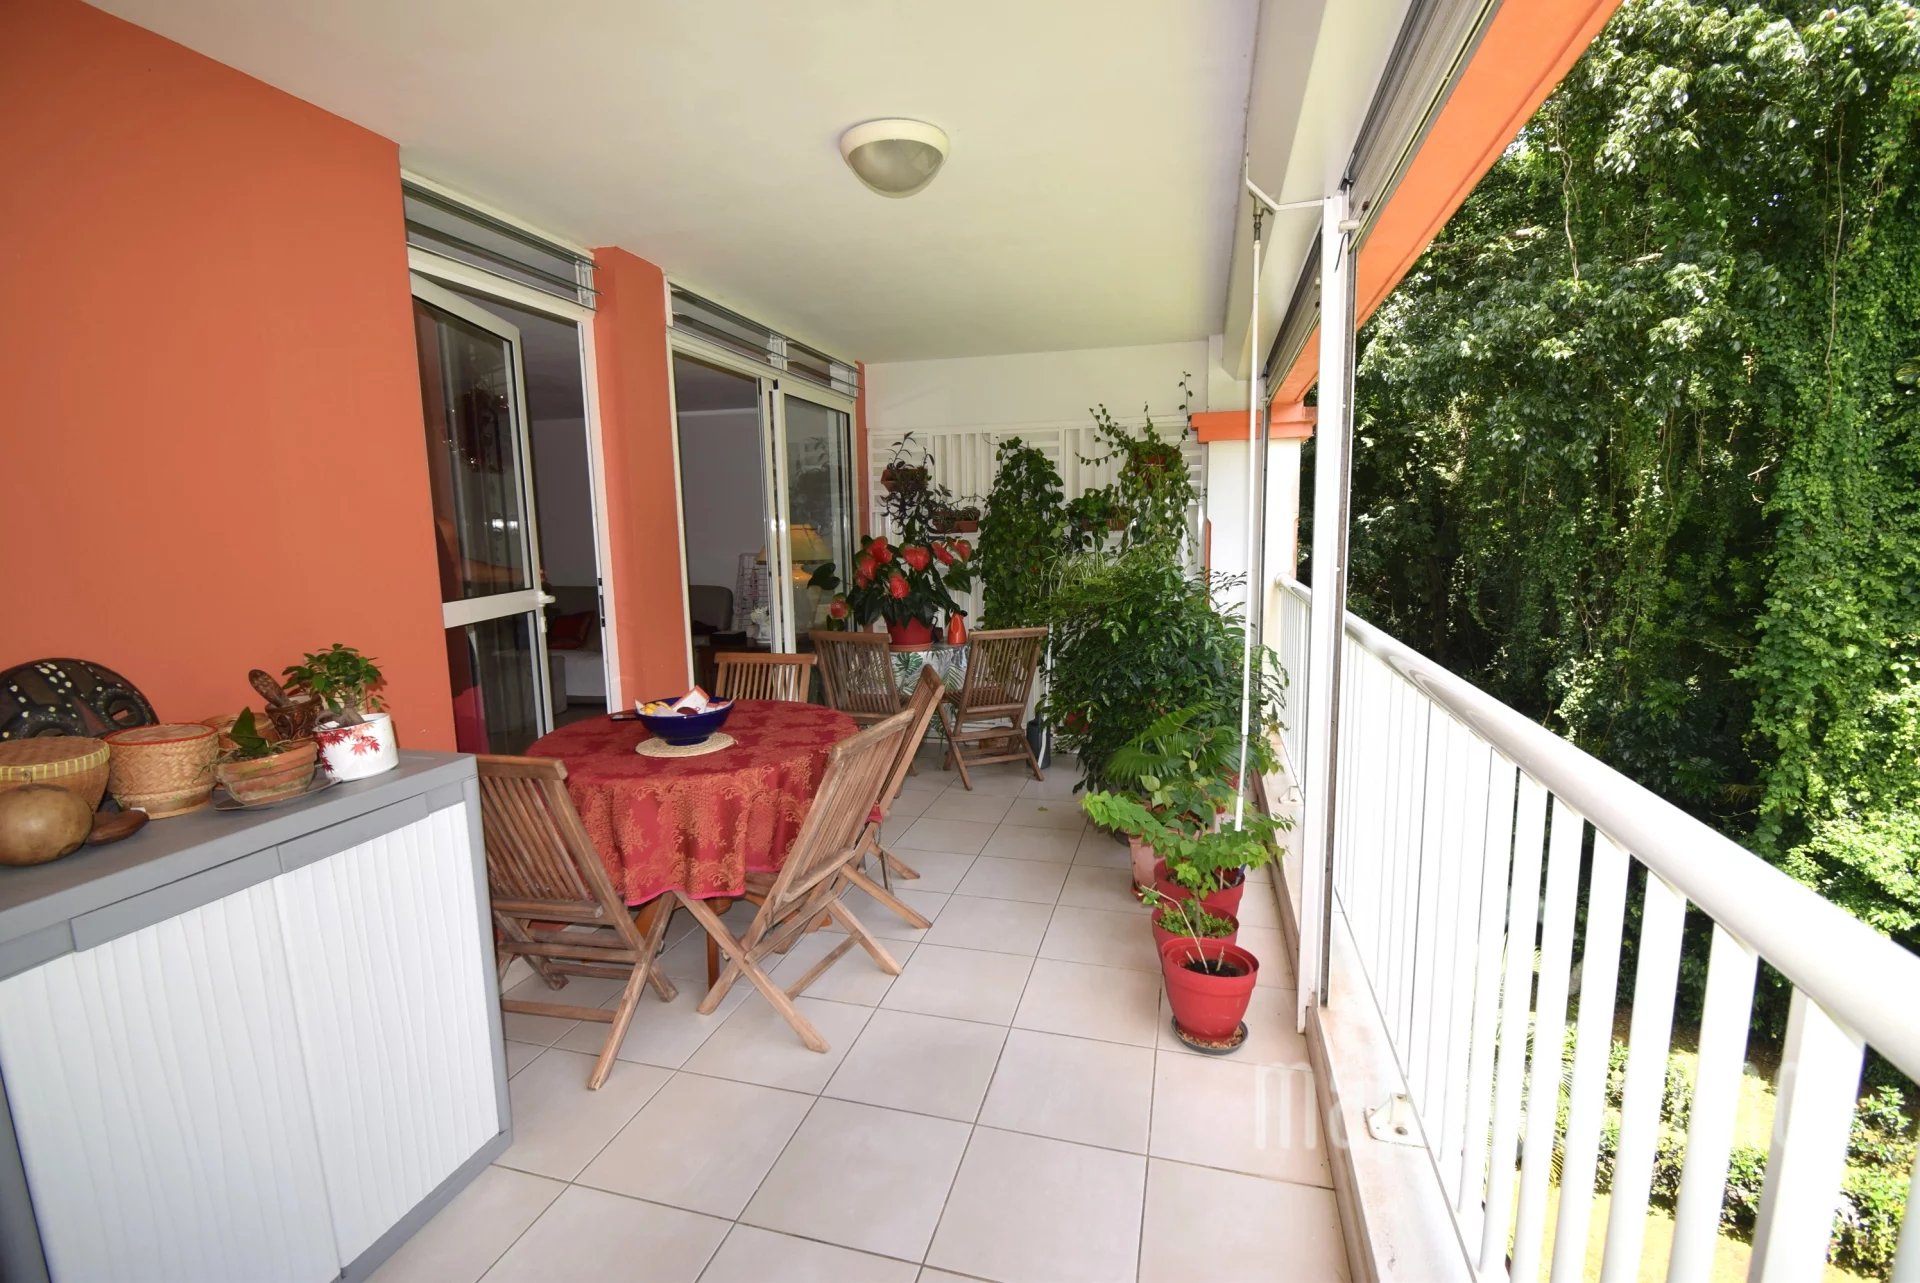 Sale Apartment - Fort-de-France - Martinique